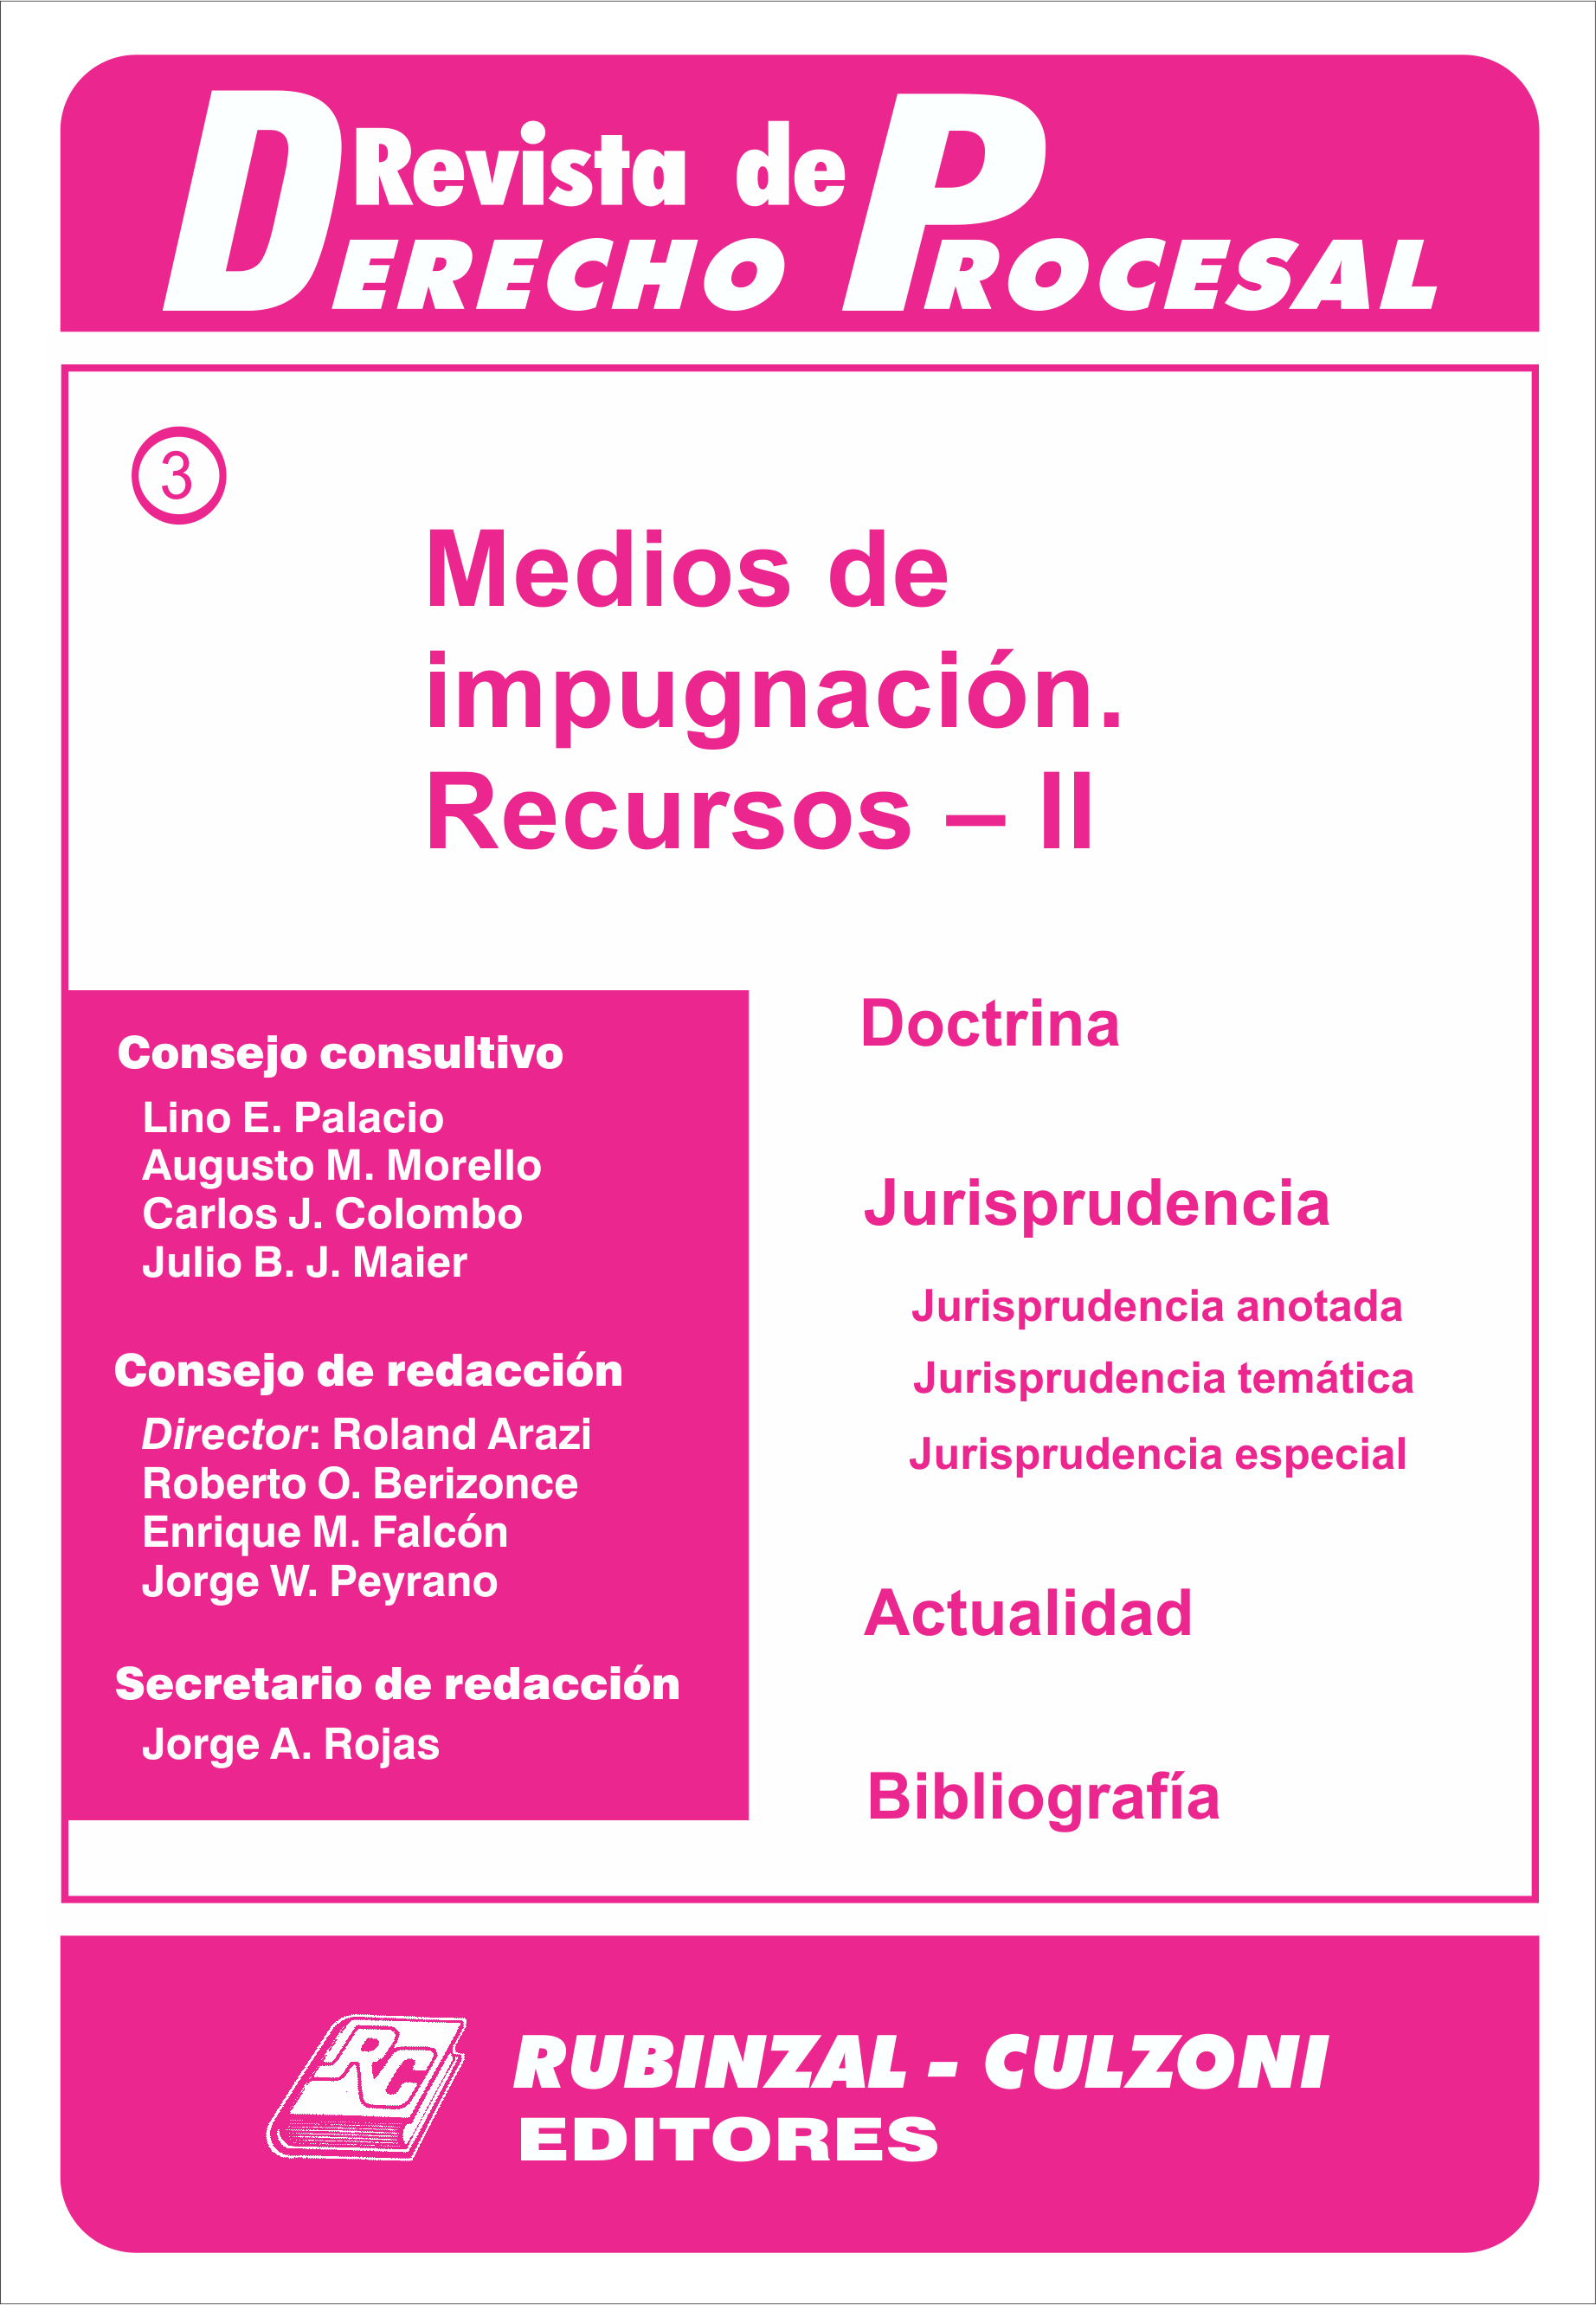 Revista de Derecho Procesal - Medios de impugnación. Recursos - II.